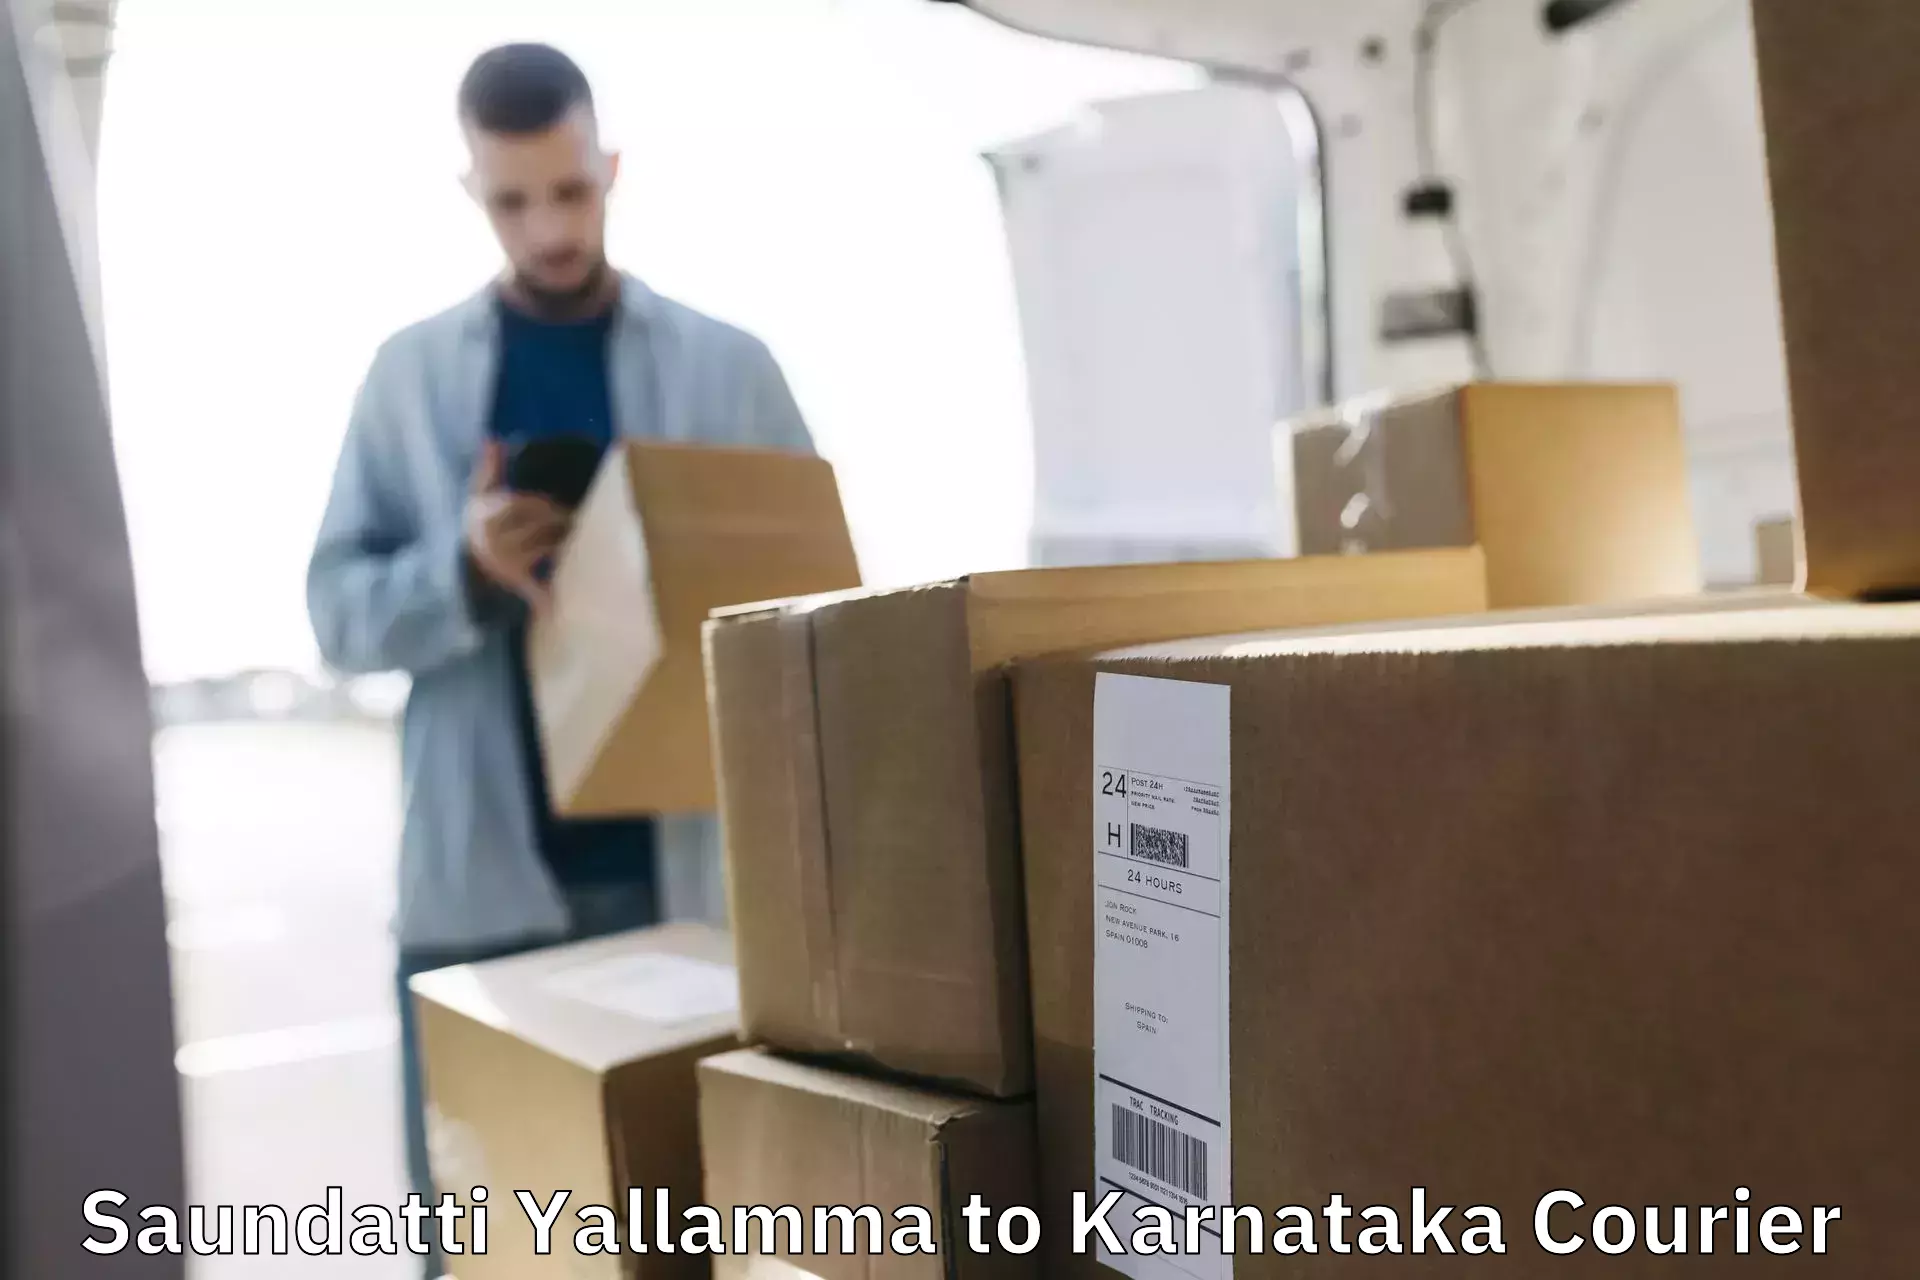 Express logistics providers Saundatti Yallamma to Eedu